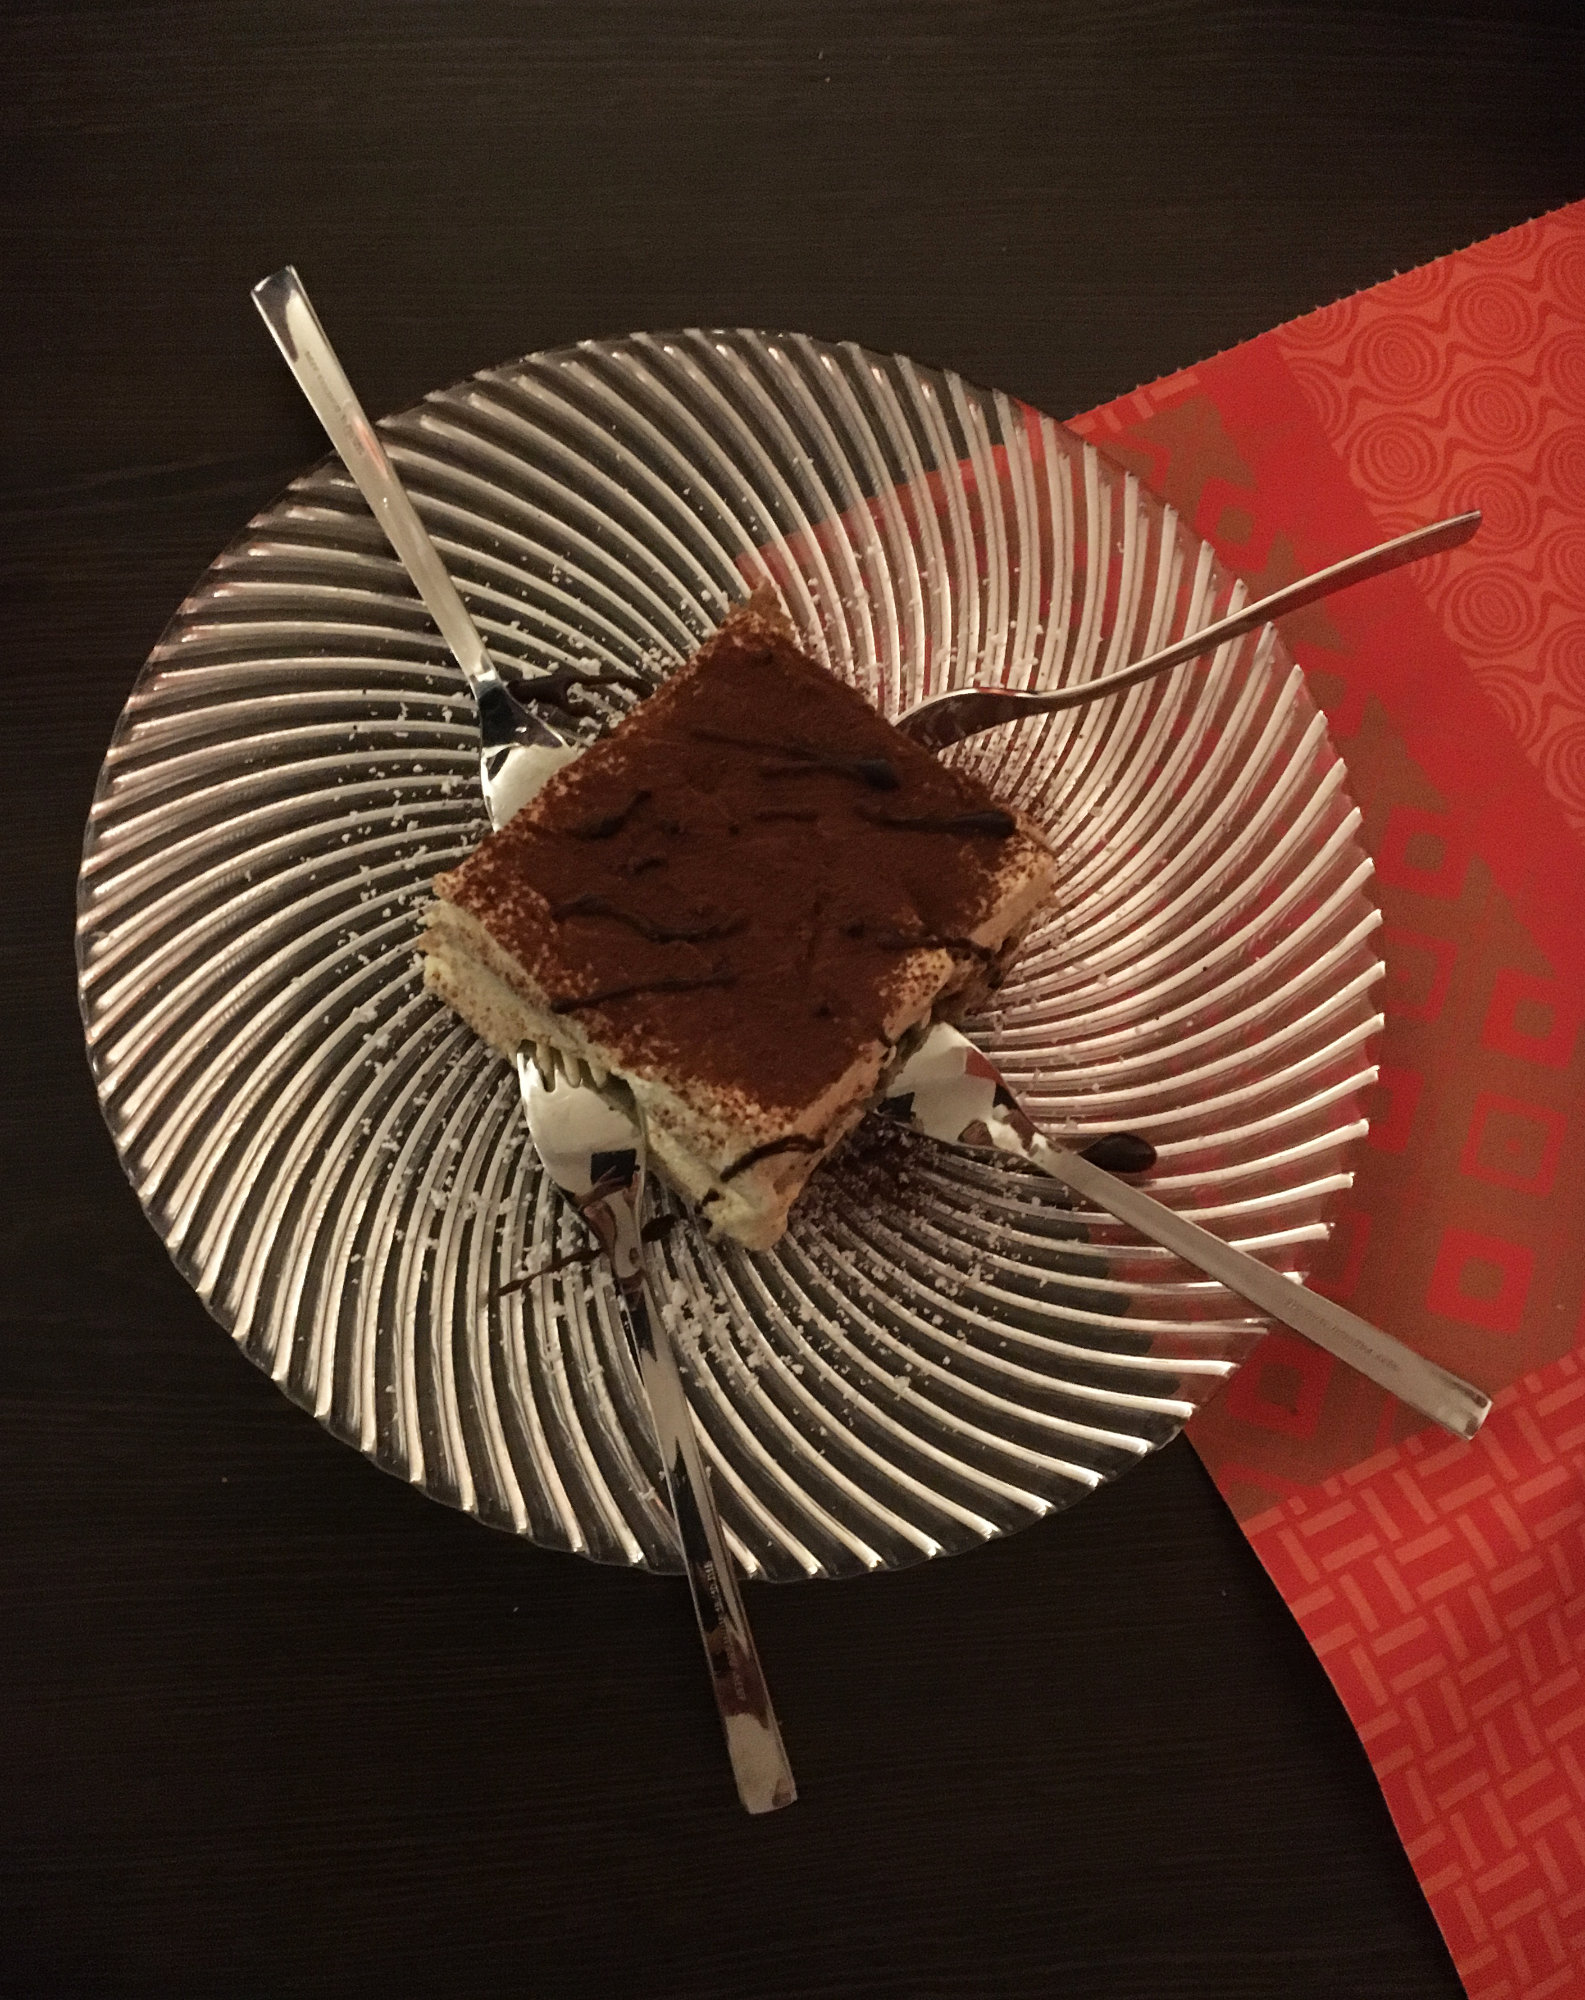 驚きのドイツ食文化 何故ドイツではケーキにフォークを横刺しにするのか問題 に迫る 第一弾 ドイツ大使館 Young Germany Japan